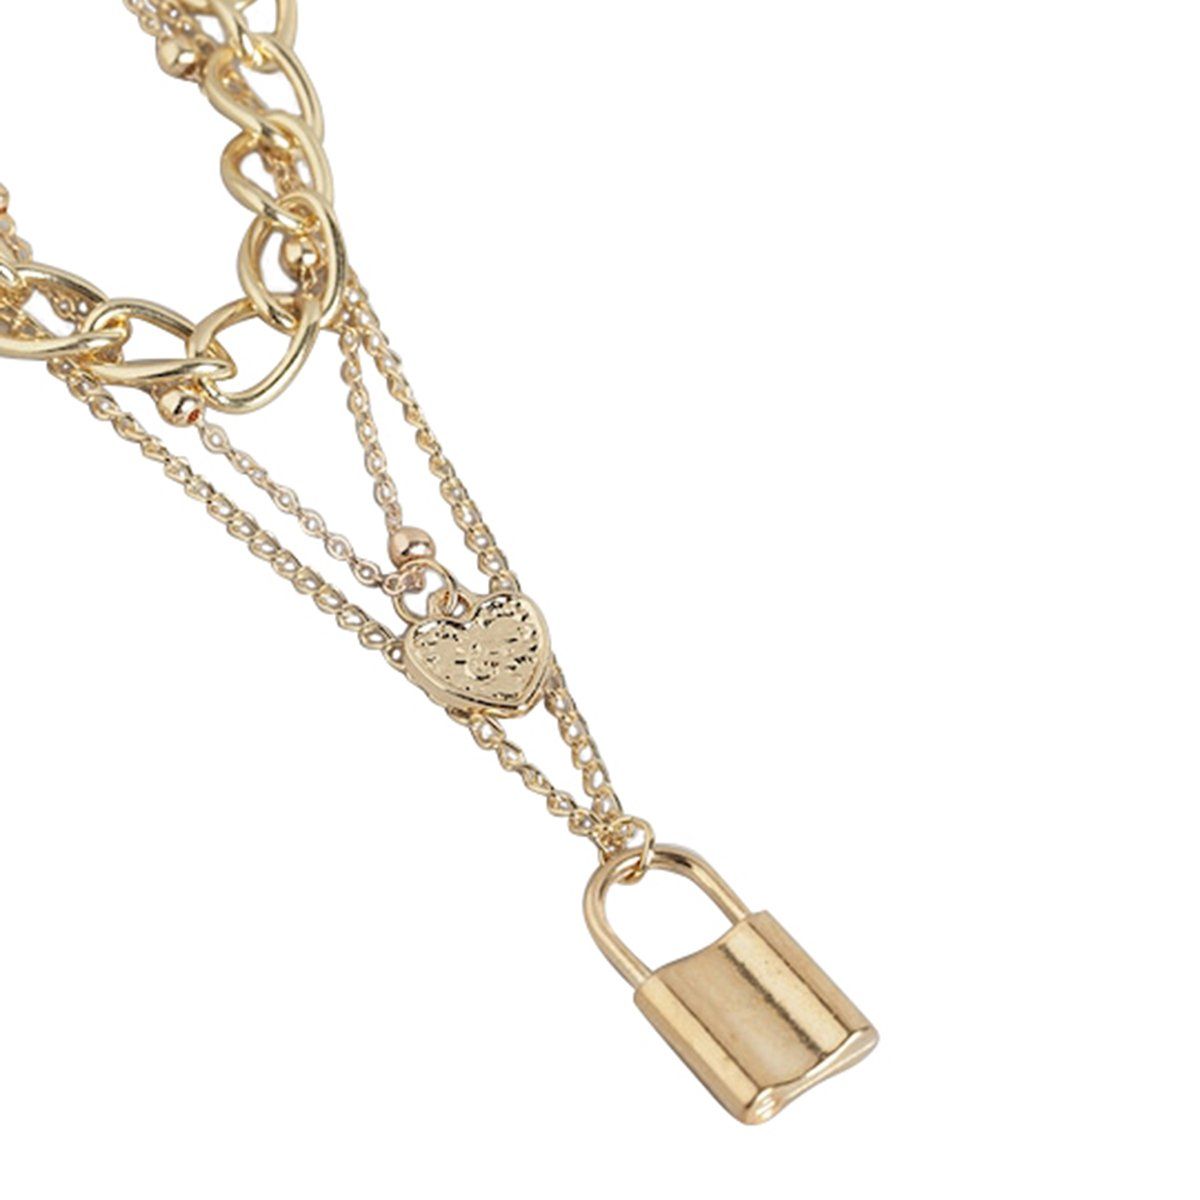 SAKAIPA Lock necklace Lock Key Pendant Necklace Long Chain India | Ubuy